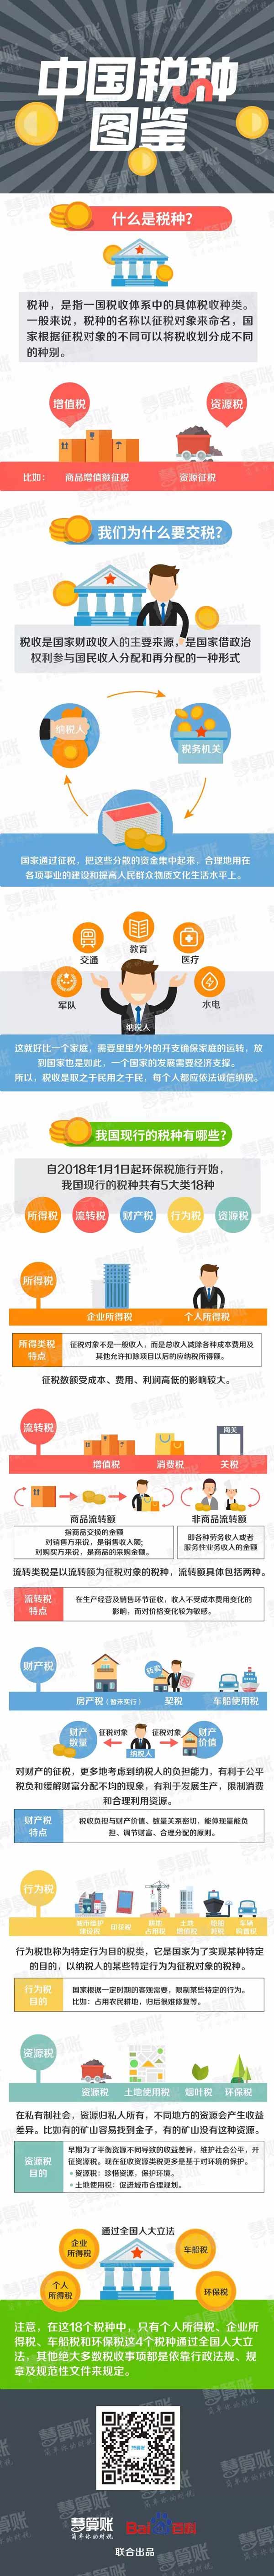 汉阴中国税种图鉴